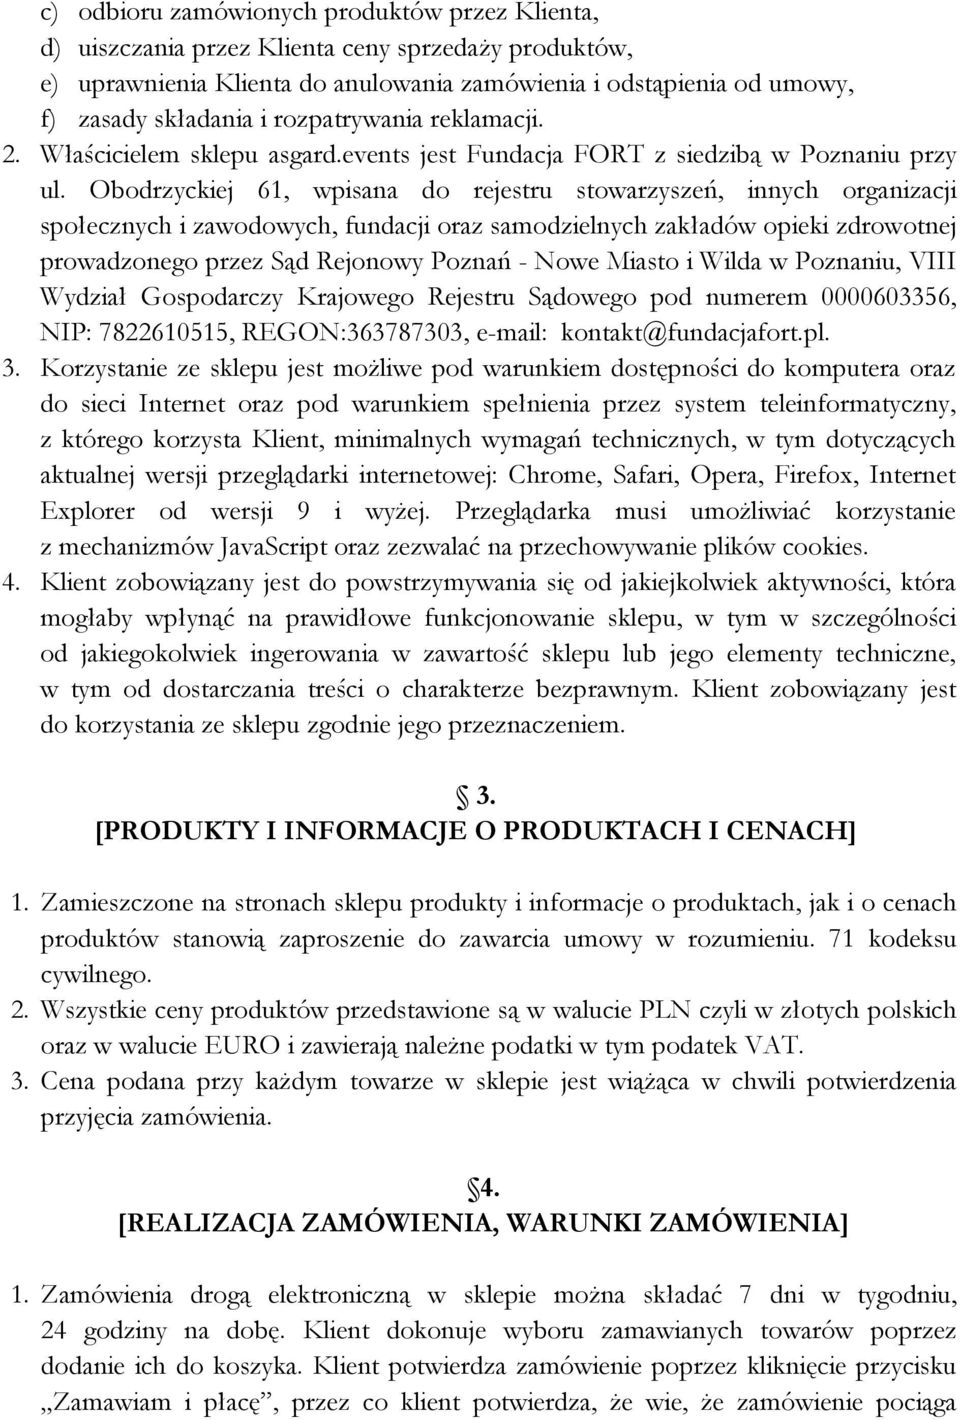 Obodrzyckiej 61, wpisana do rejestru stowarzyszeń, innych organizacji społecznych i zawodowych, fundacji oraz samodzielnych zakładów opieki zdrowotnej prowadzonego przez Sąd Rejonowy Poznań - Nowe